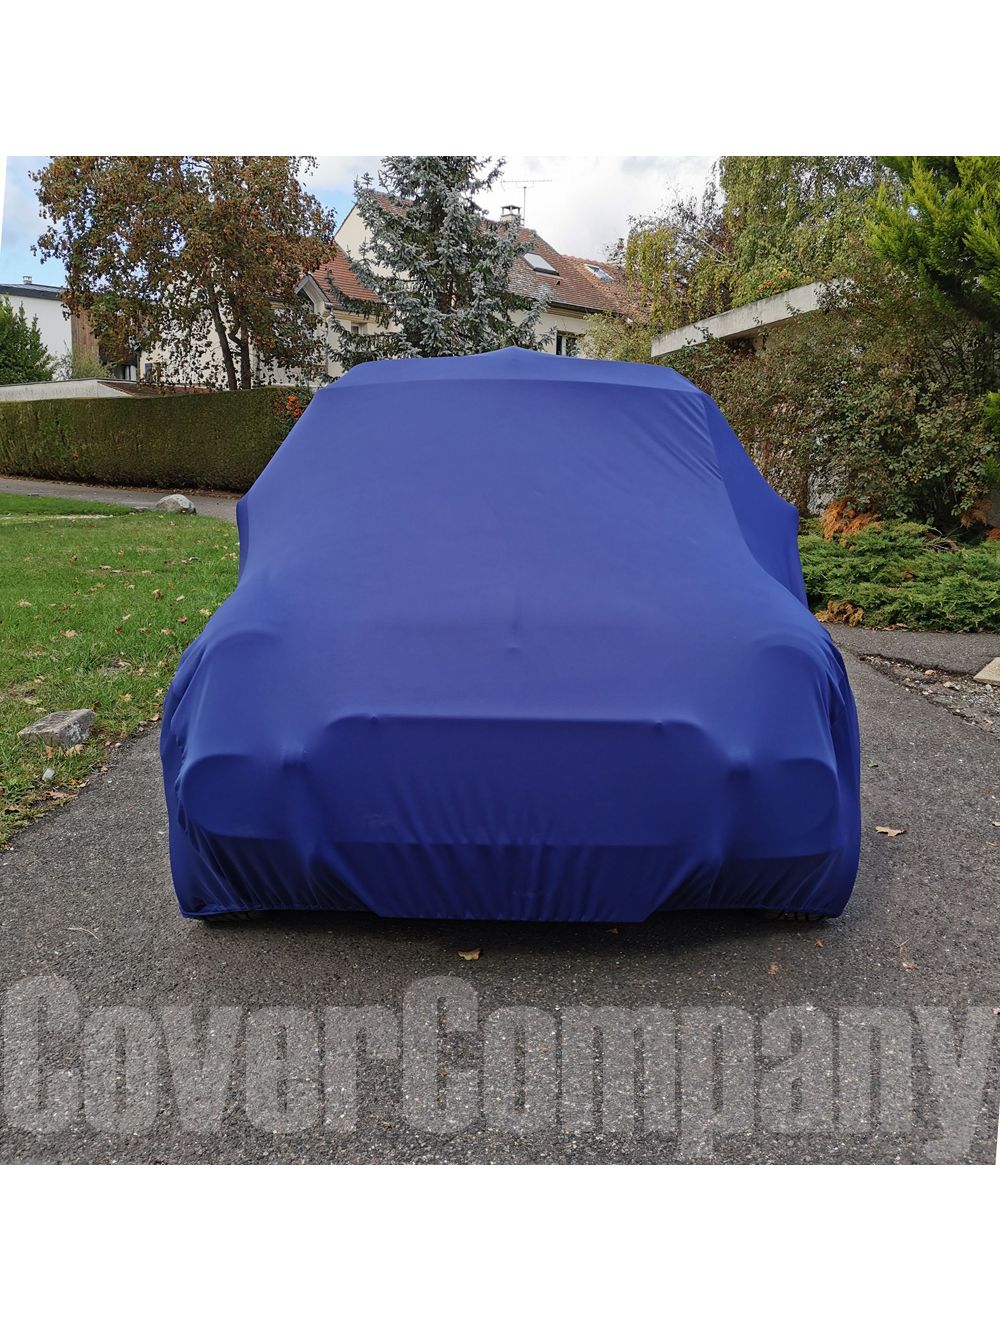 Housse de protection voiture (usage exterieur) - NMS3295 - pièces Austin  Mini Cooper - Nancy Mini Shop